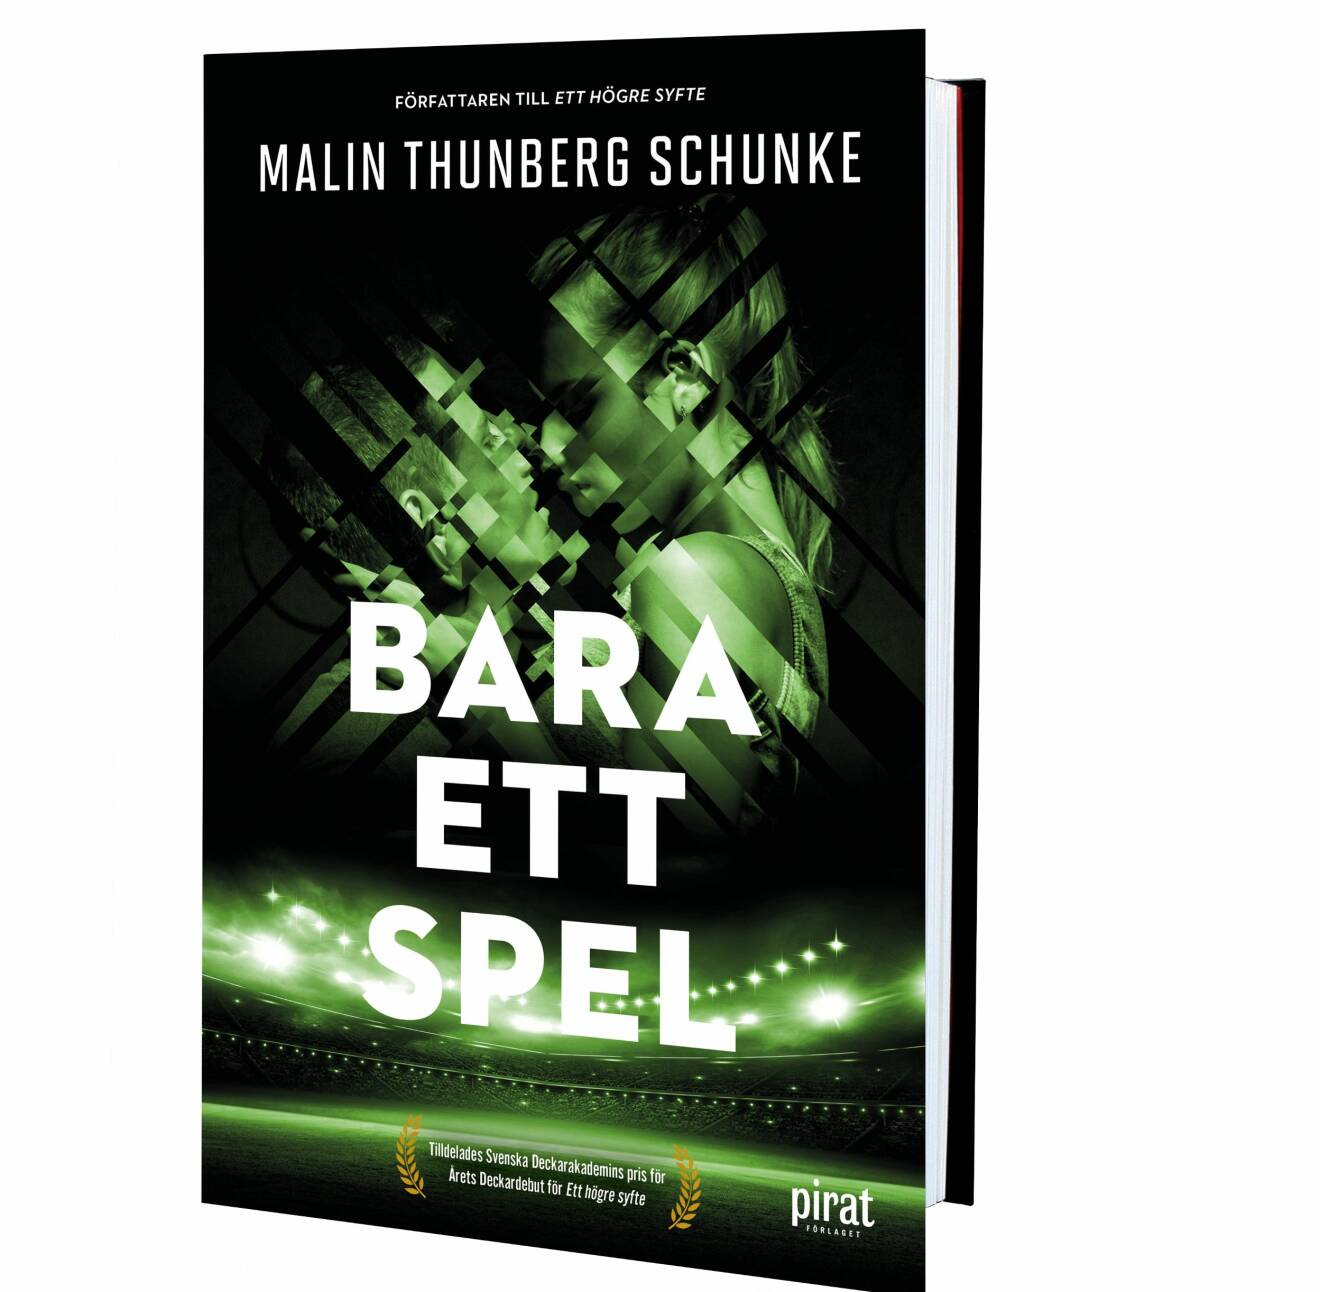 Bara ett spel, Malin Thunberg Schunke (Piratförlaget)